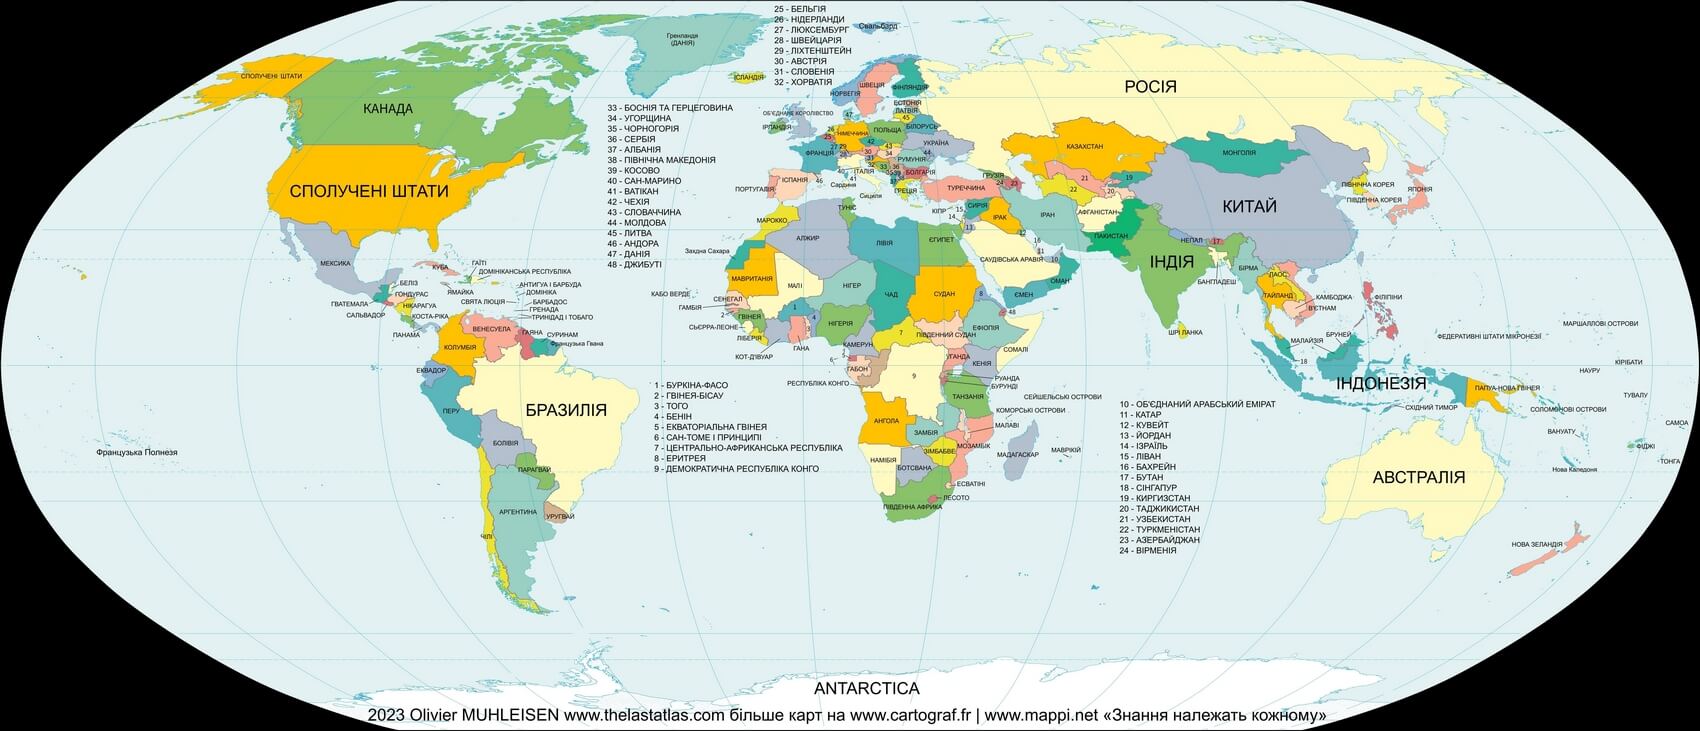 Mapa mundi com países em ucraniano